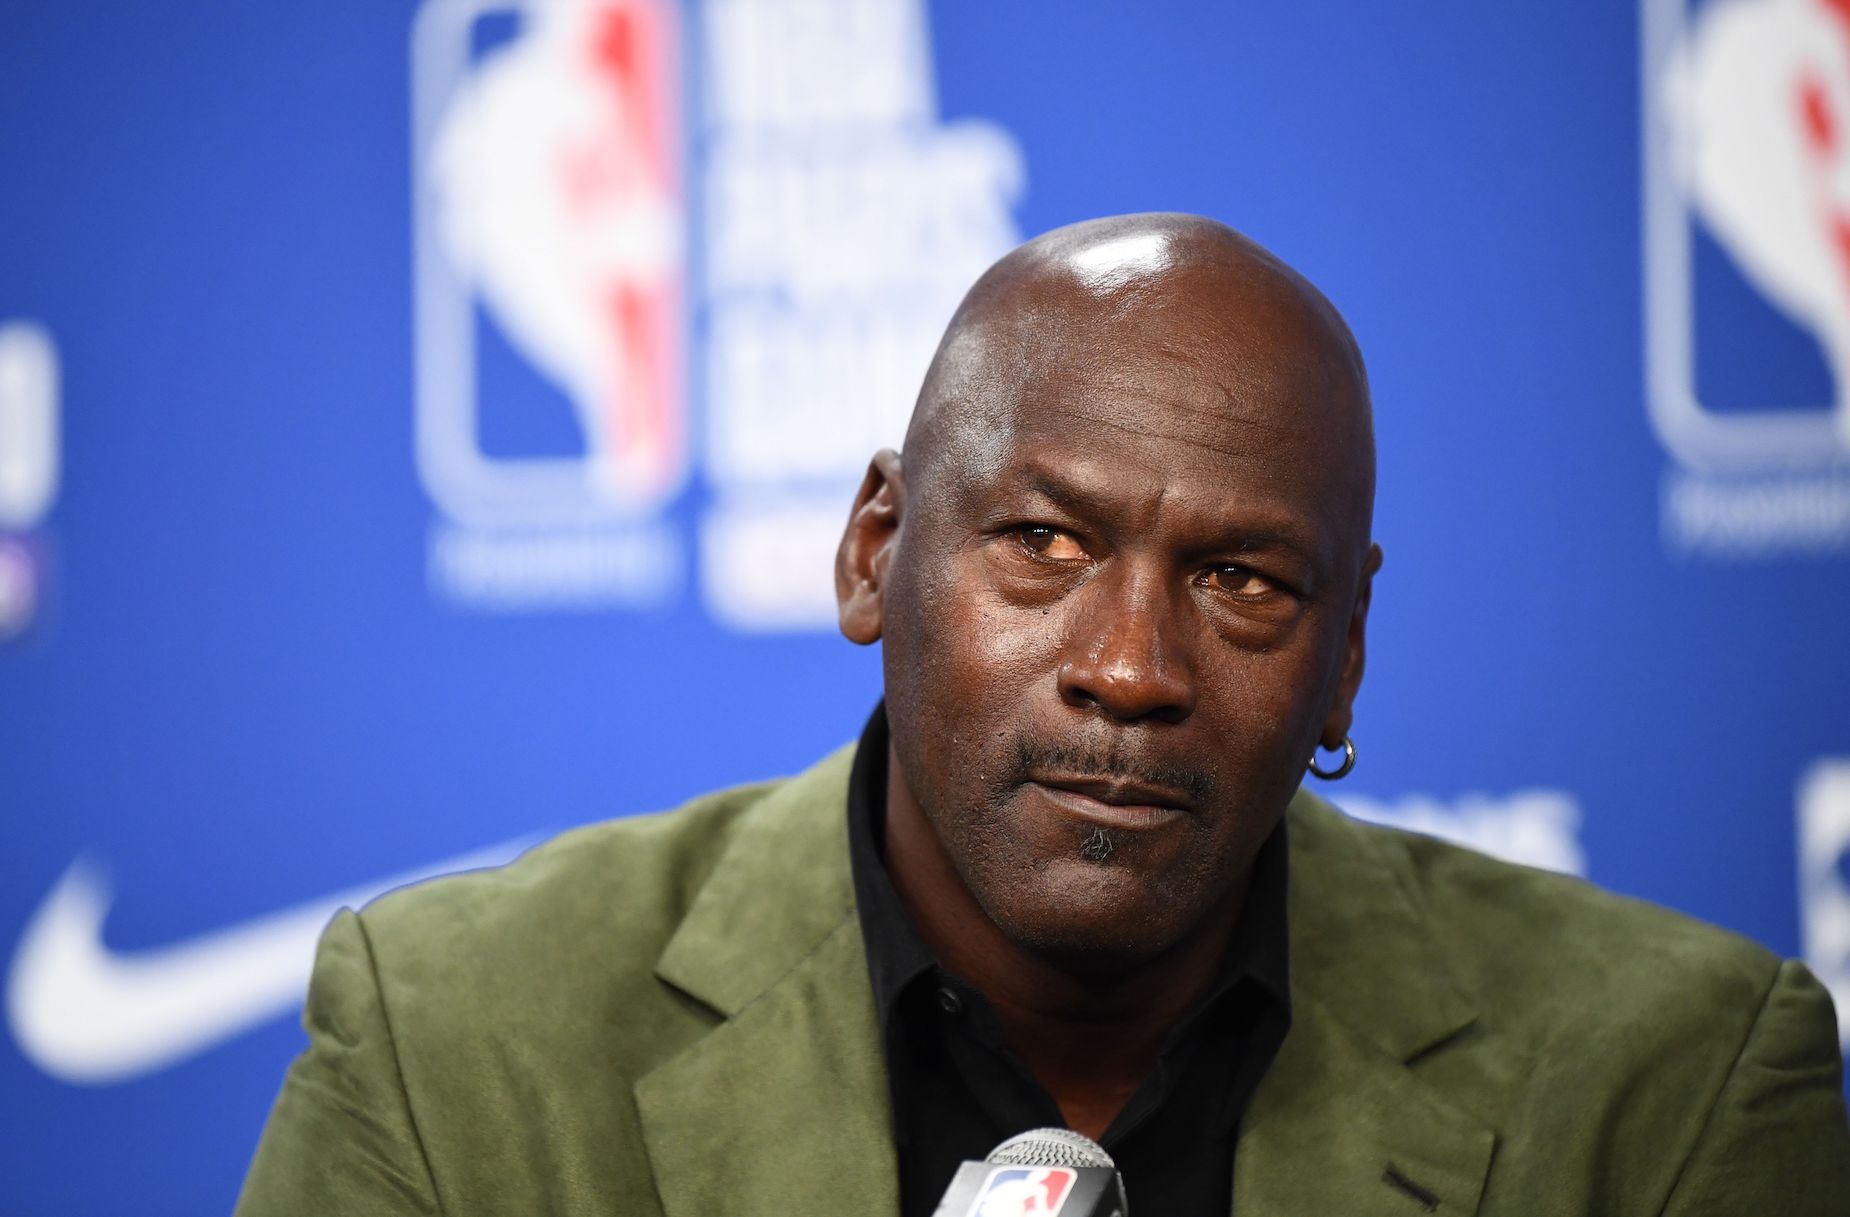 NBA legend Michael Jordan during a press conference.